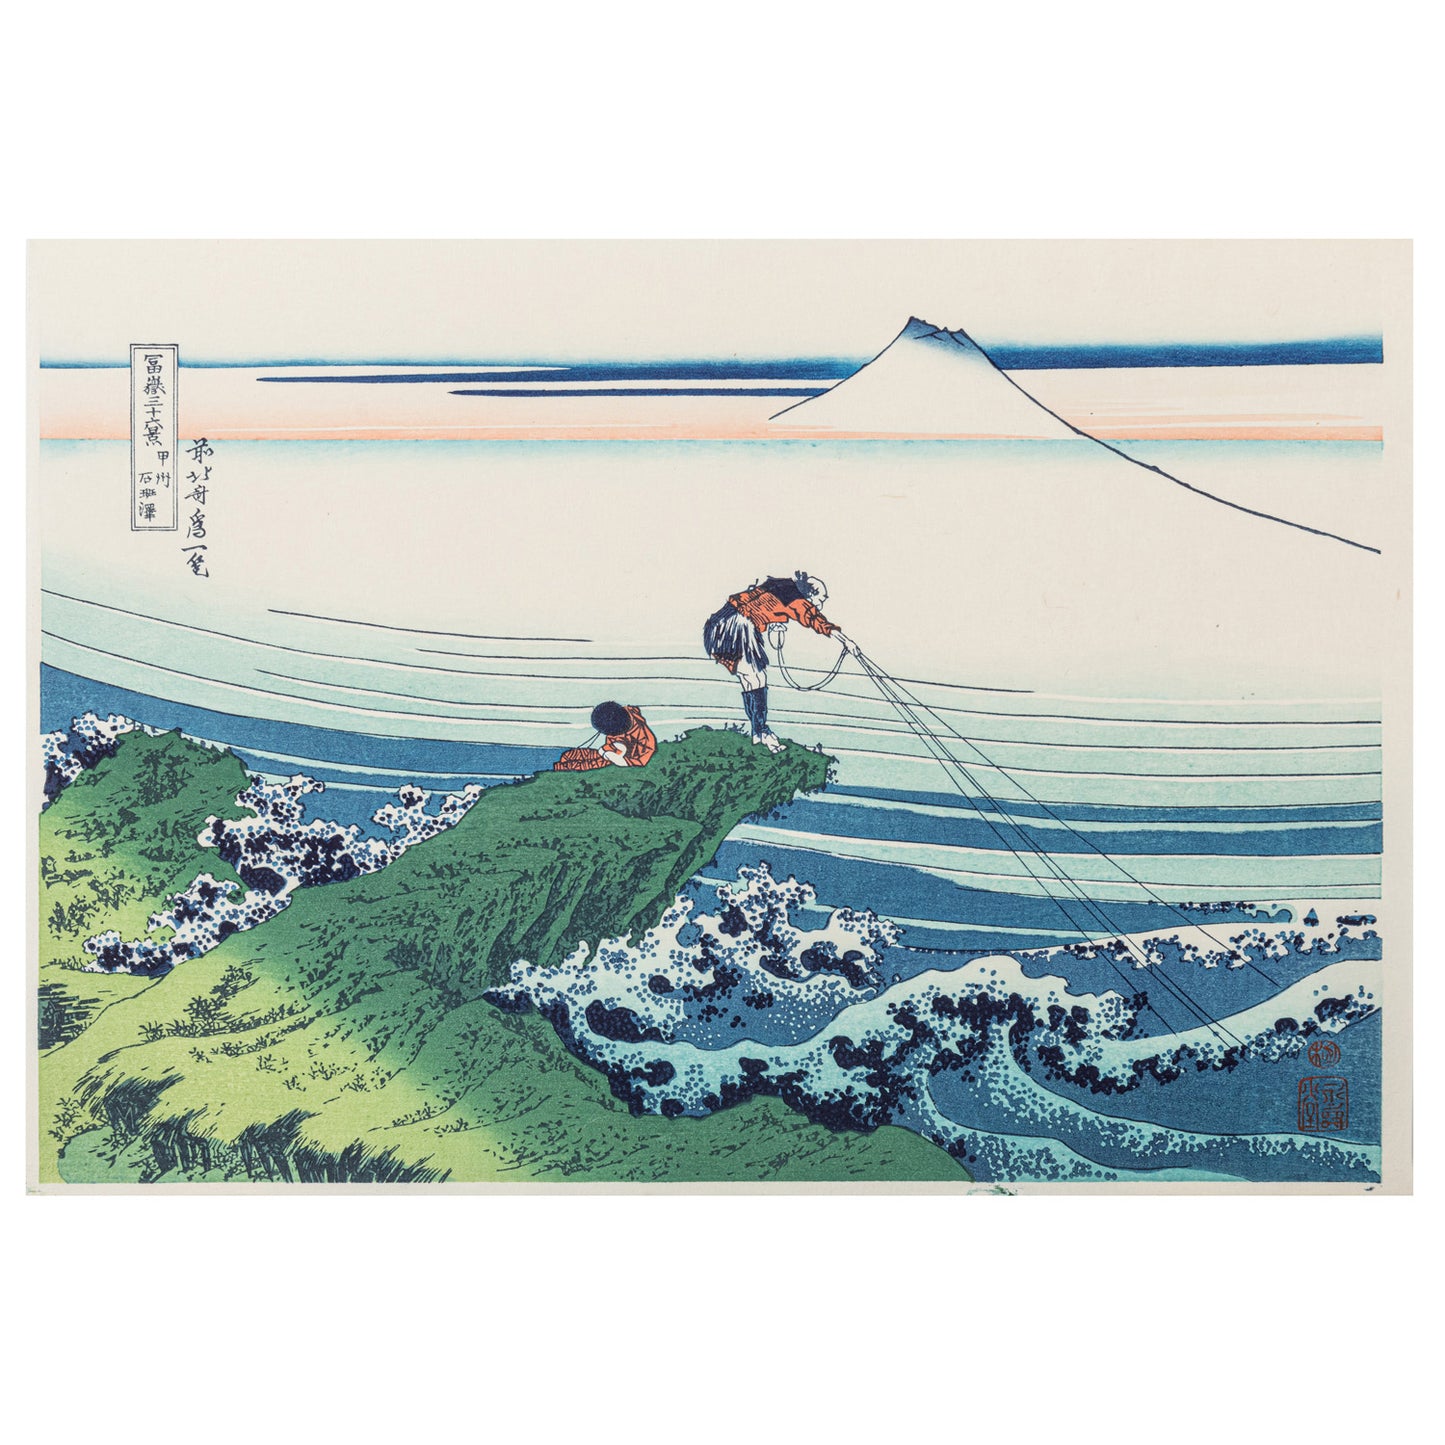 Kajikazawa in Kai Japanese Woodblock Print